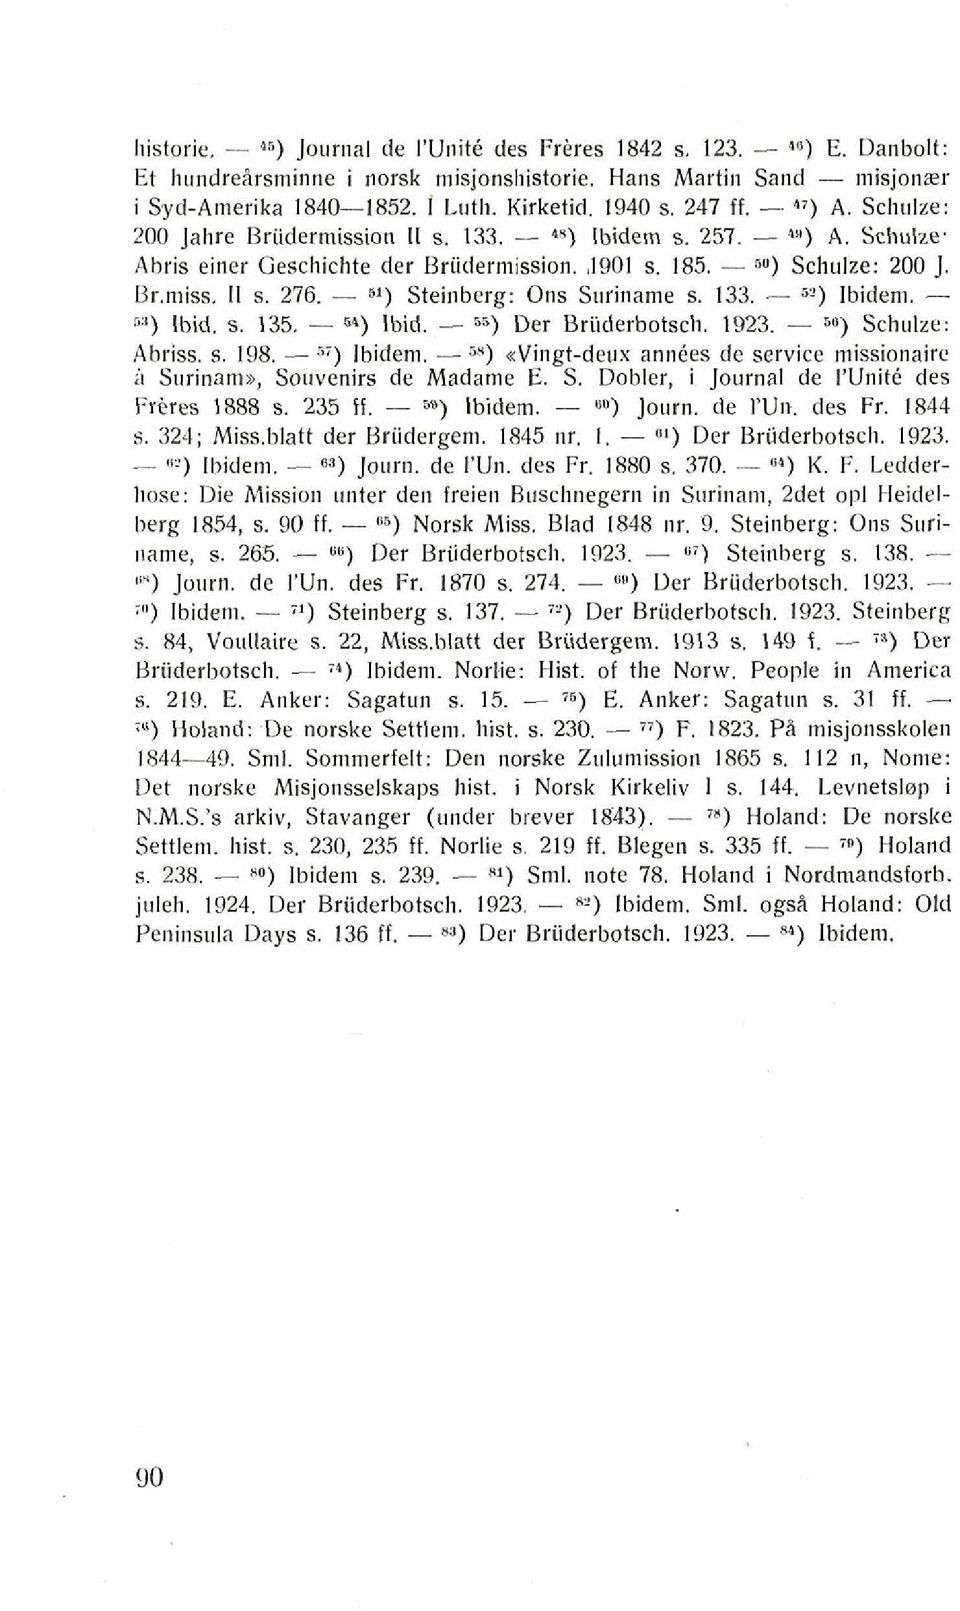 - 5') Steinberg: Ons Suriname s. 13'3..- 6') Ibidem. - fi") Ibid. s. 135. - 5') Ibid. - 5s) Der Briiderbotsch. 1923. - 50) Schulze: Abriss. s. 198. - fi) Ibidem.